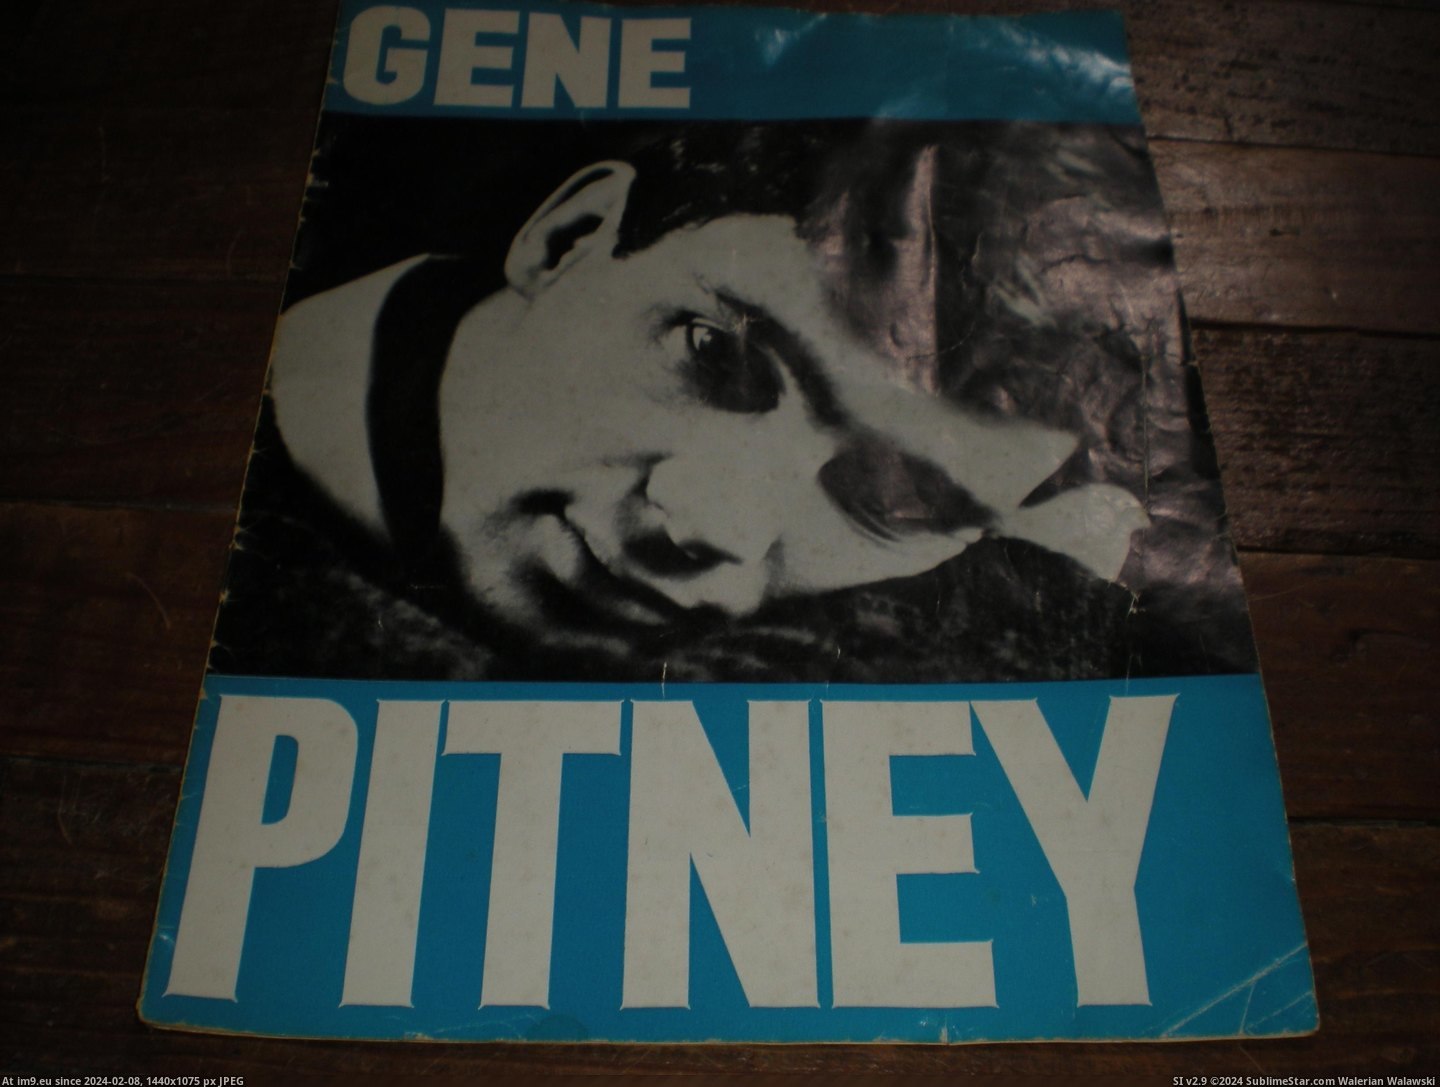 #Gene #Pitney #Prog Gene Pitney prog 1 Pic. (Bild von album new 1))